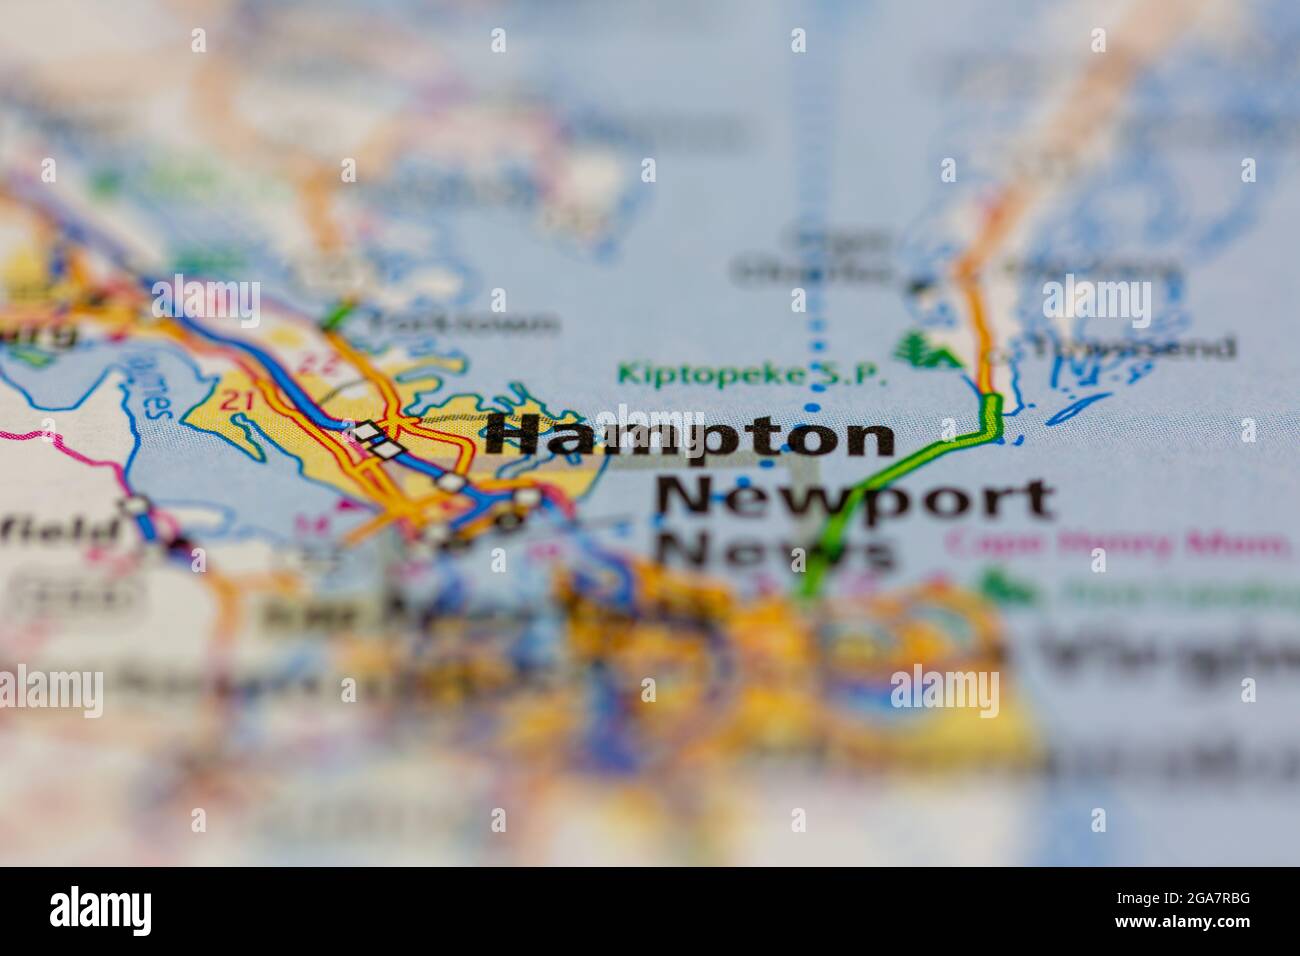 Hampton Virginia wird auf einer Straßenkarte oder Geografie-Karte angezeigt Stockfoto